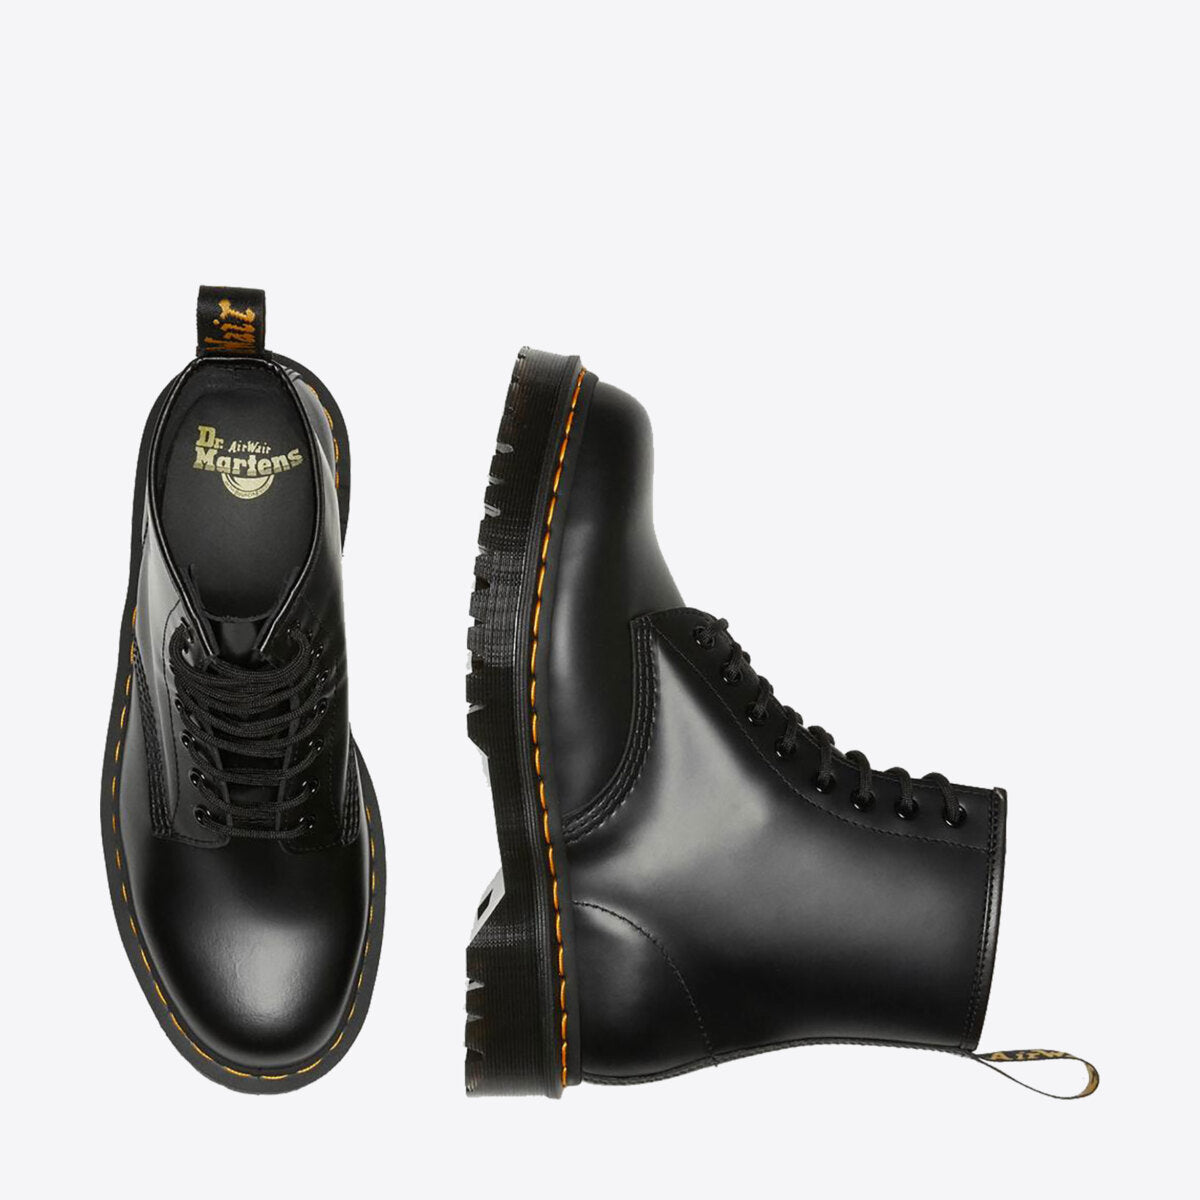 DR MARTENS 1460 Bex Platform Boot Black Smooth Leather - Image 7